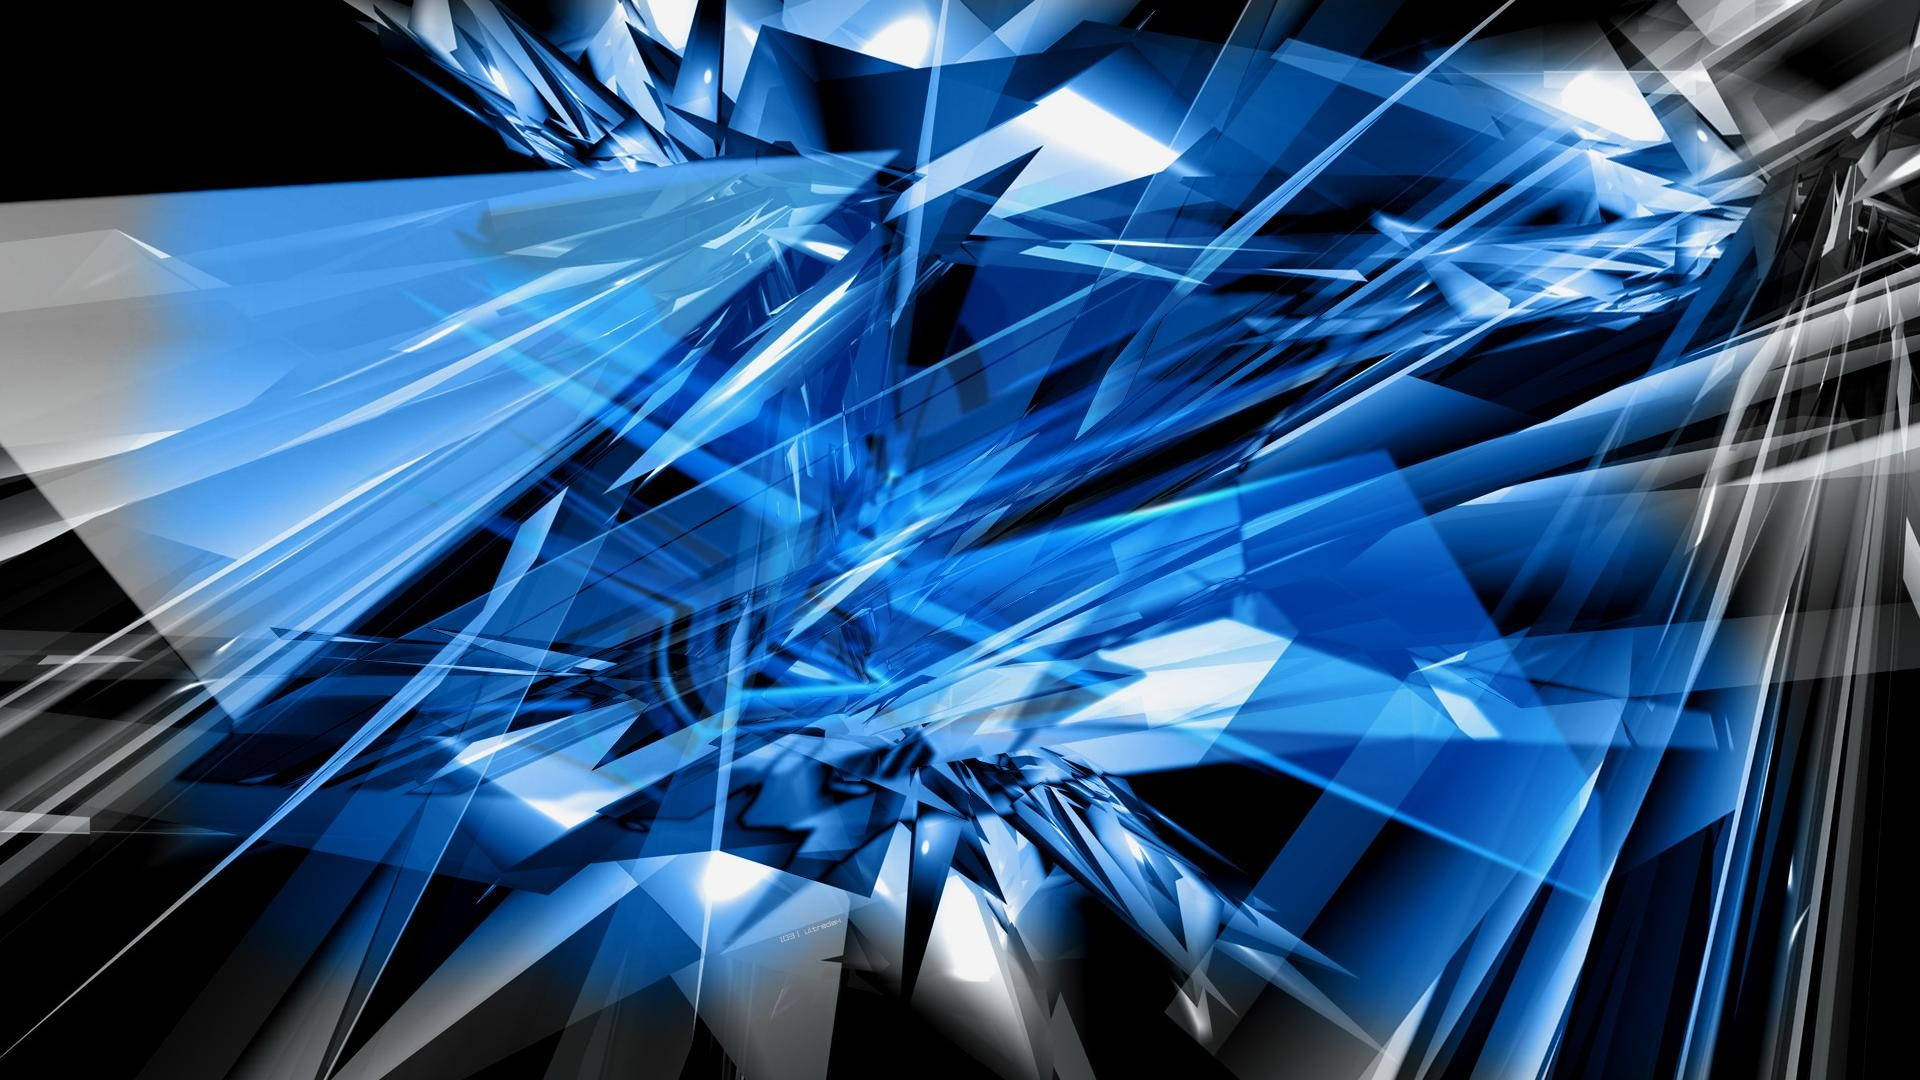 Diseñohd De Fragmentos De Vidrio Azul. Fondo de pantalla